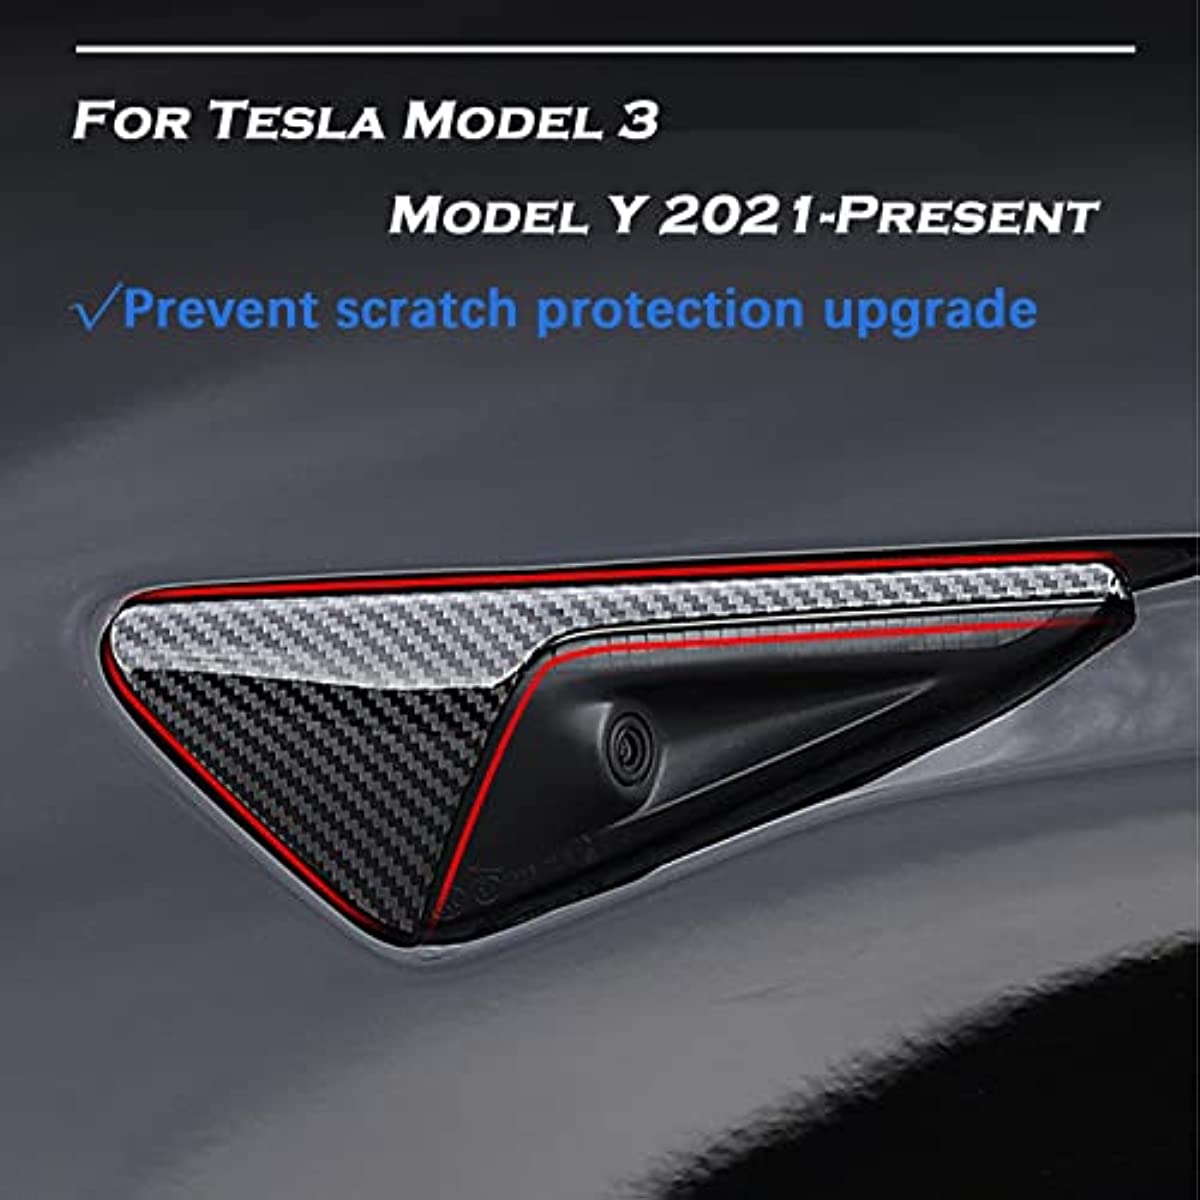 ABS Side Camera Turn Signal Cover for Tesla Model 3 Model Y - acetesla